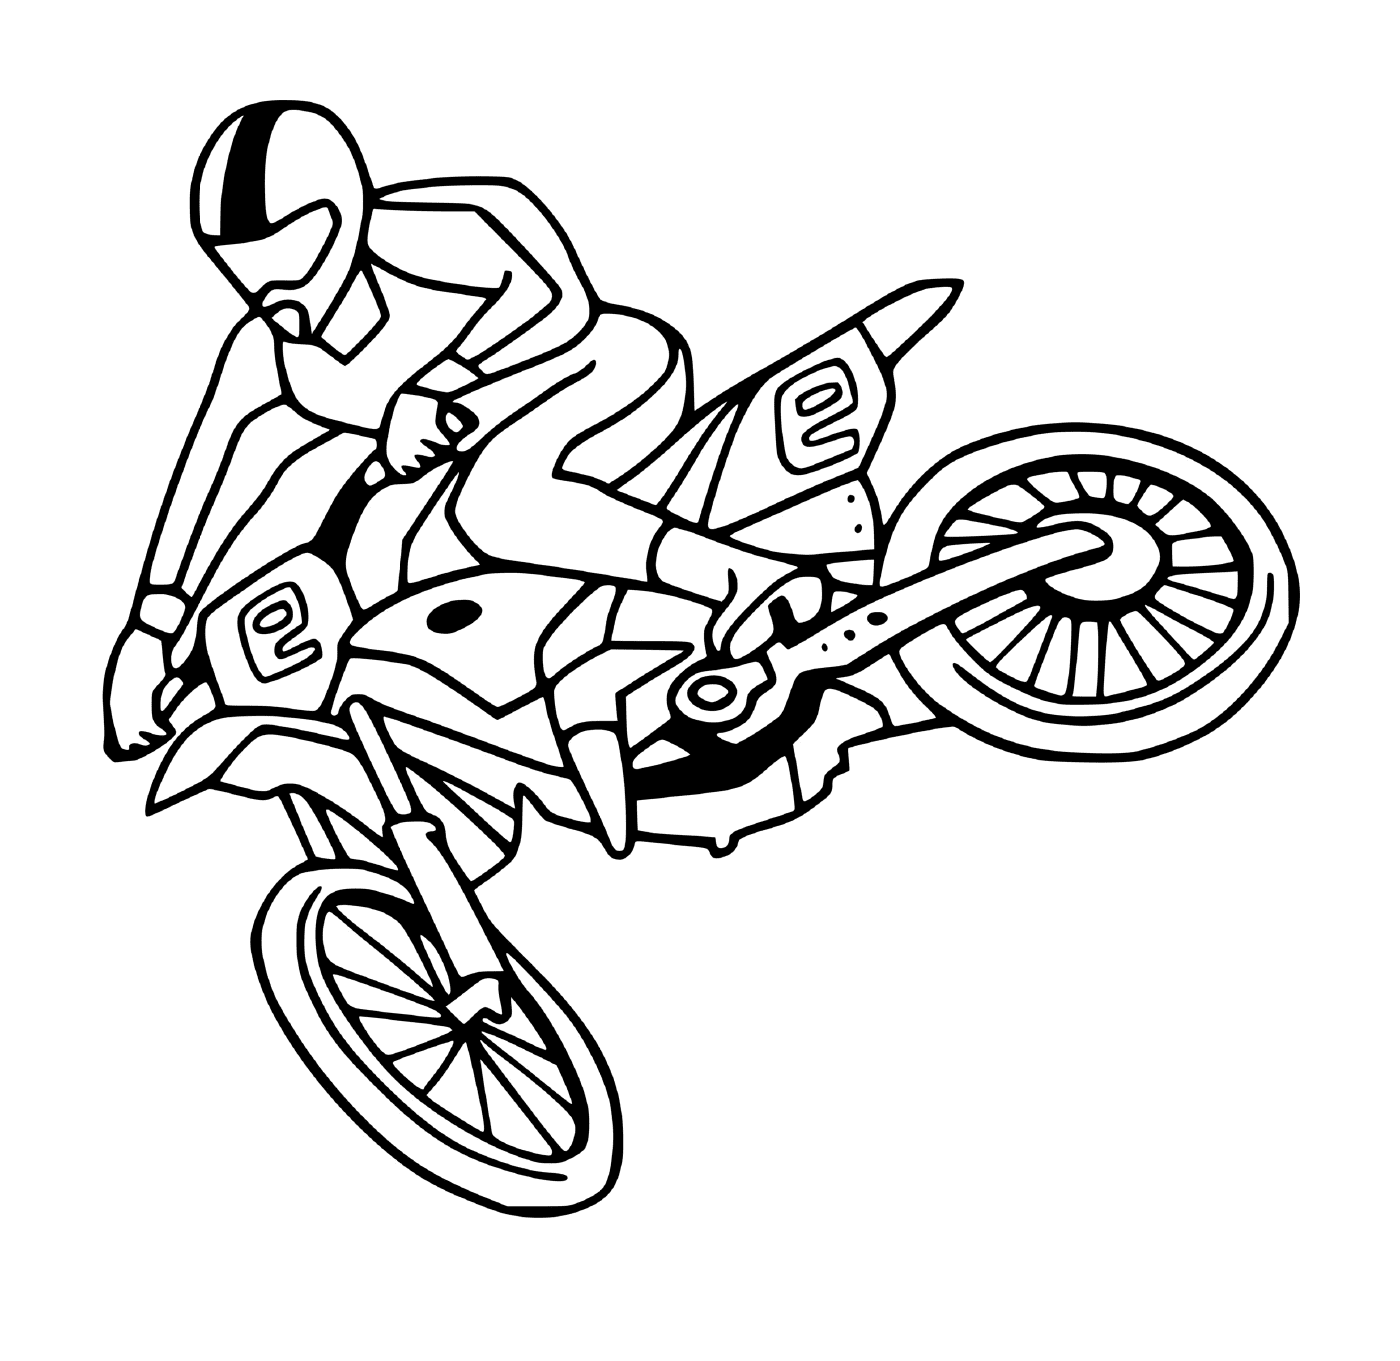  骑摩托车的男子 